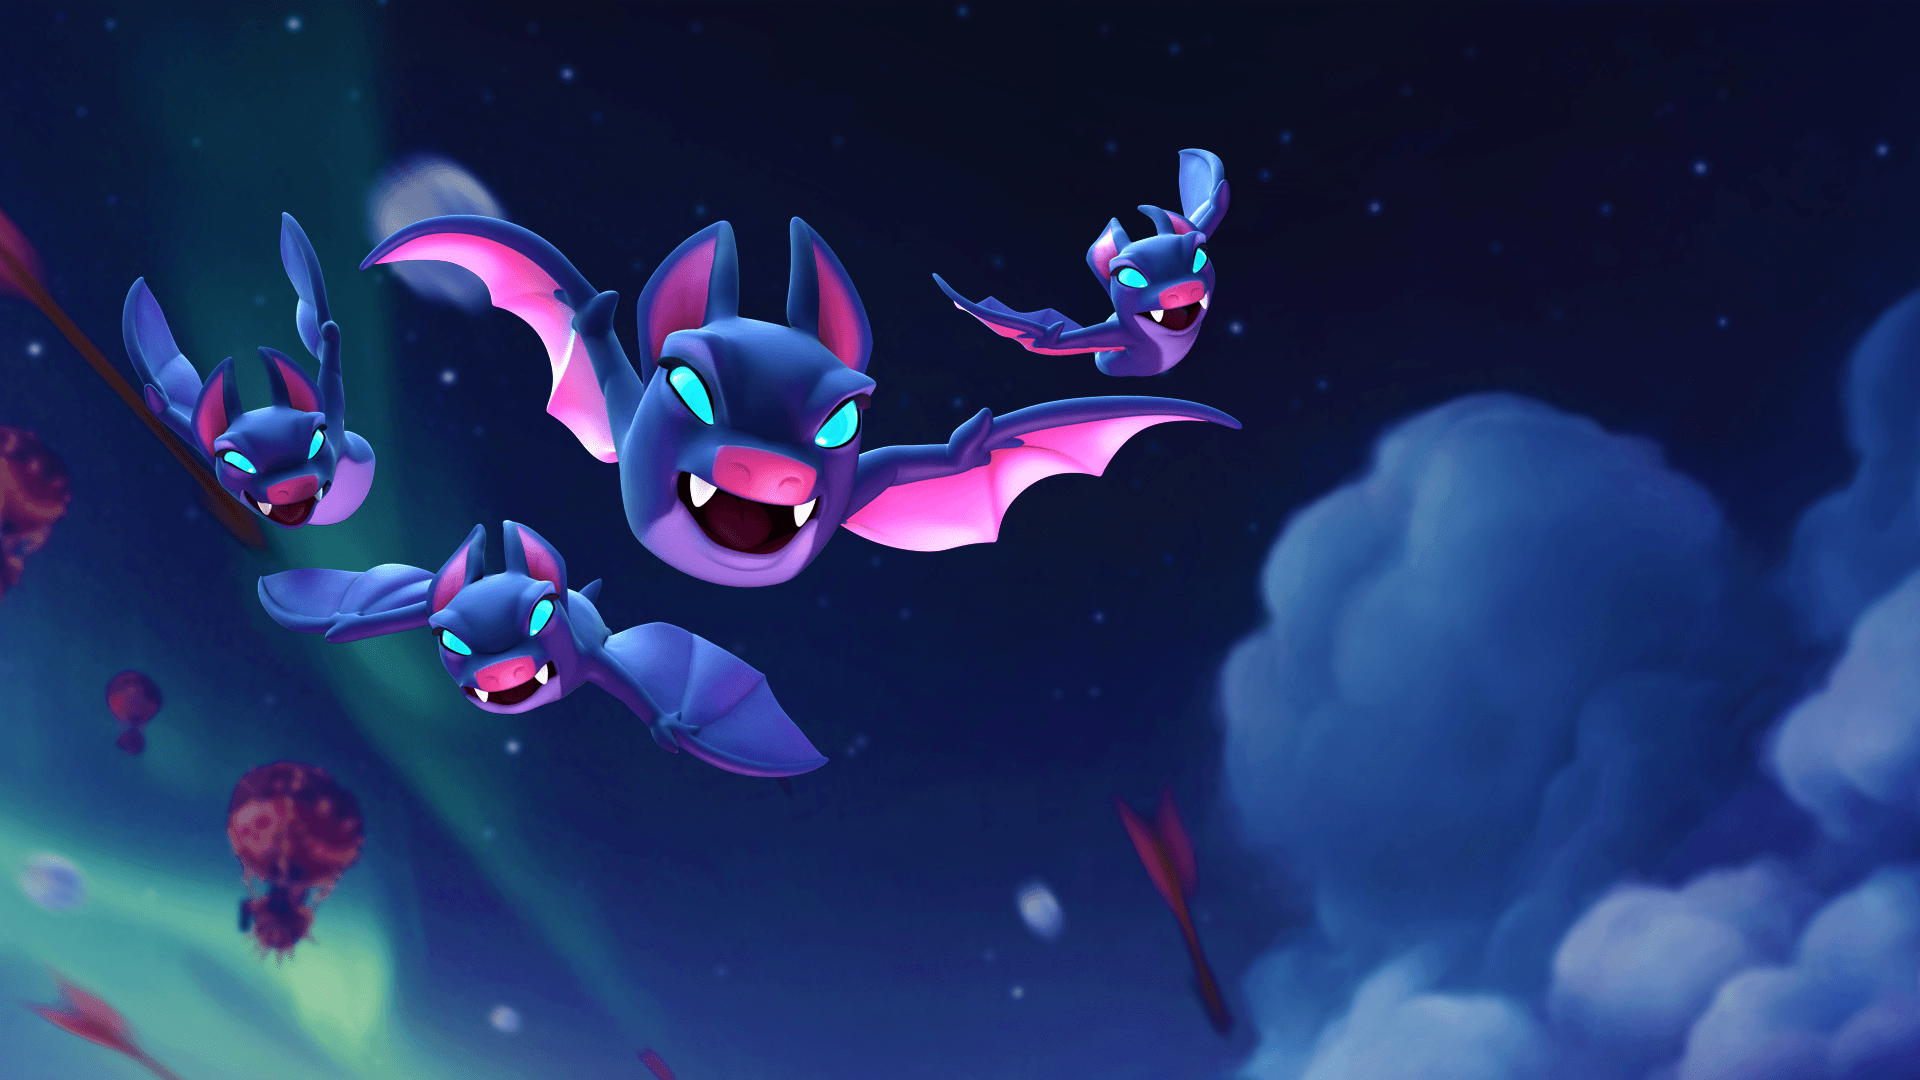 Umgrupo De Morcegos Voando No Céu